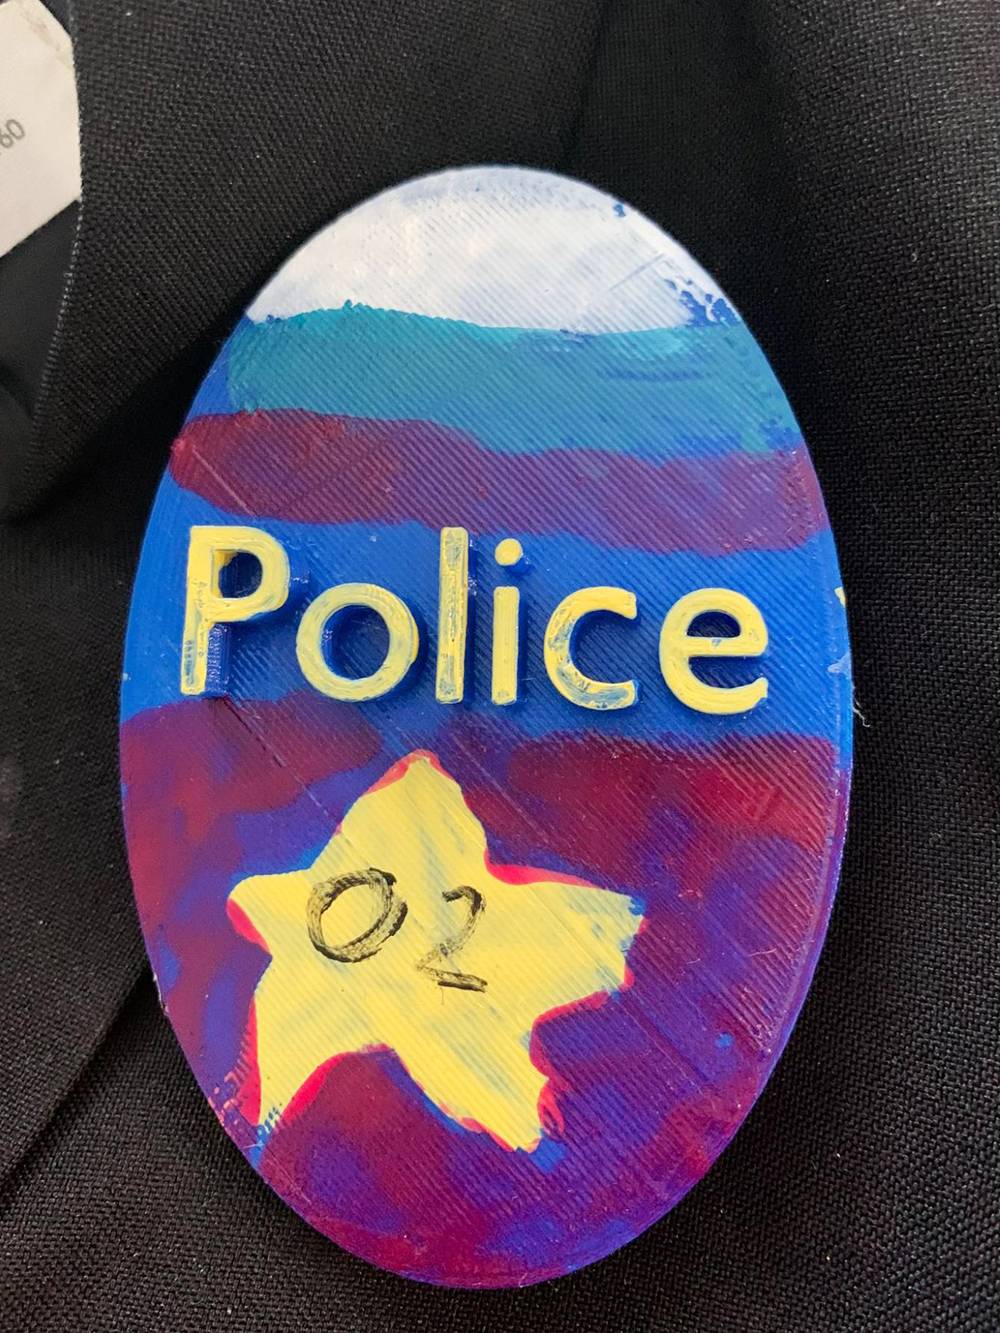 Вот такой полицейский значок получил брат на день рождения. Отличный подарок, сделанный своими руками